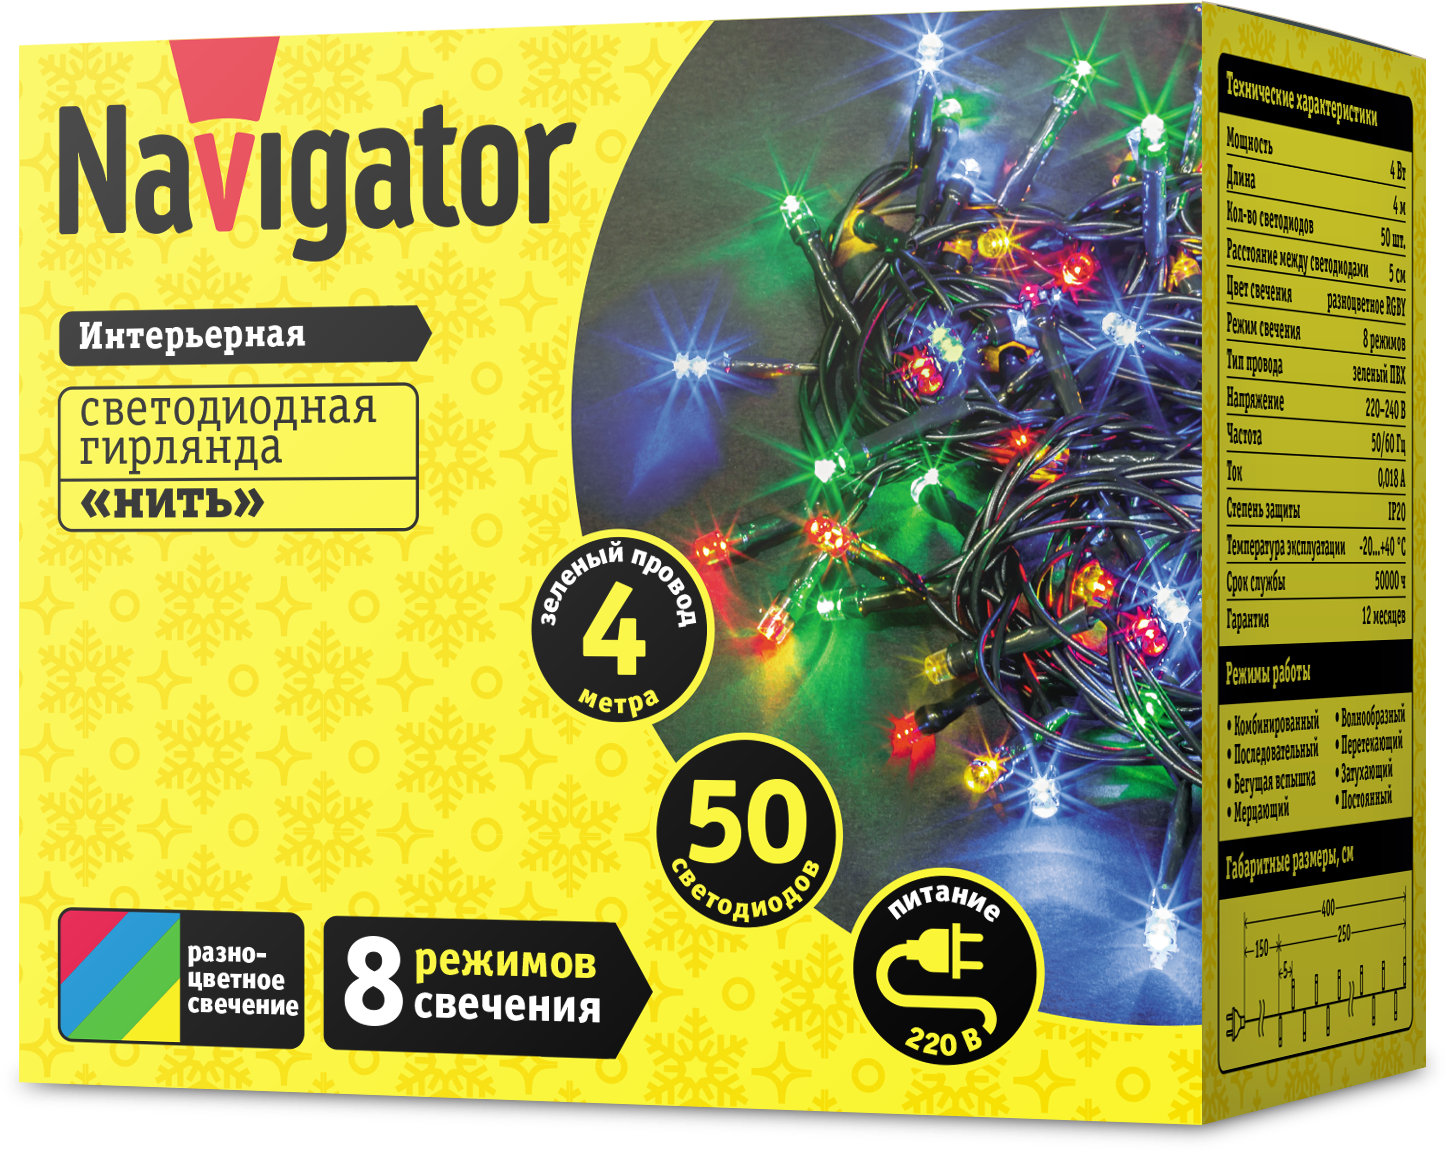 Гирлянды Navigator для праздничного настроения в новом году!